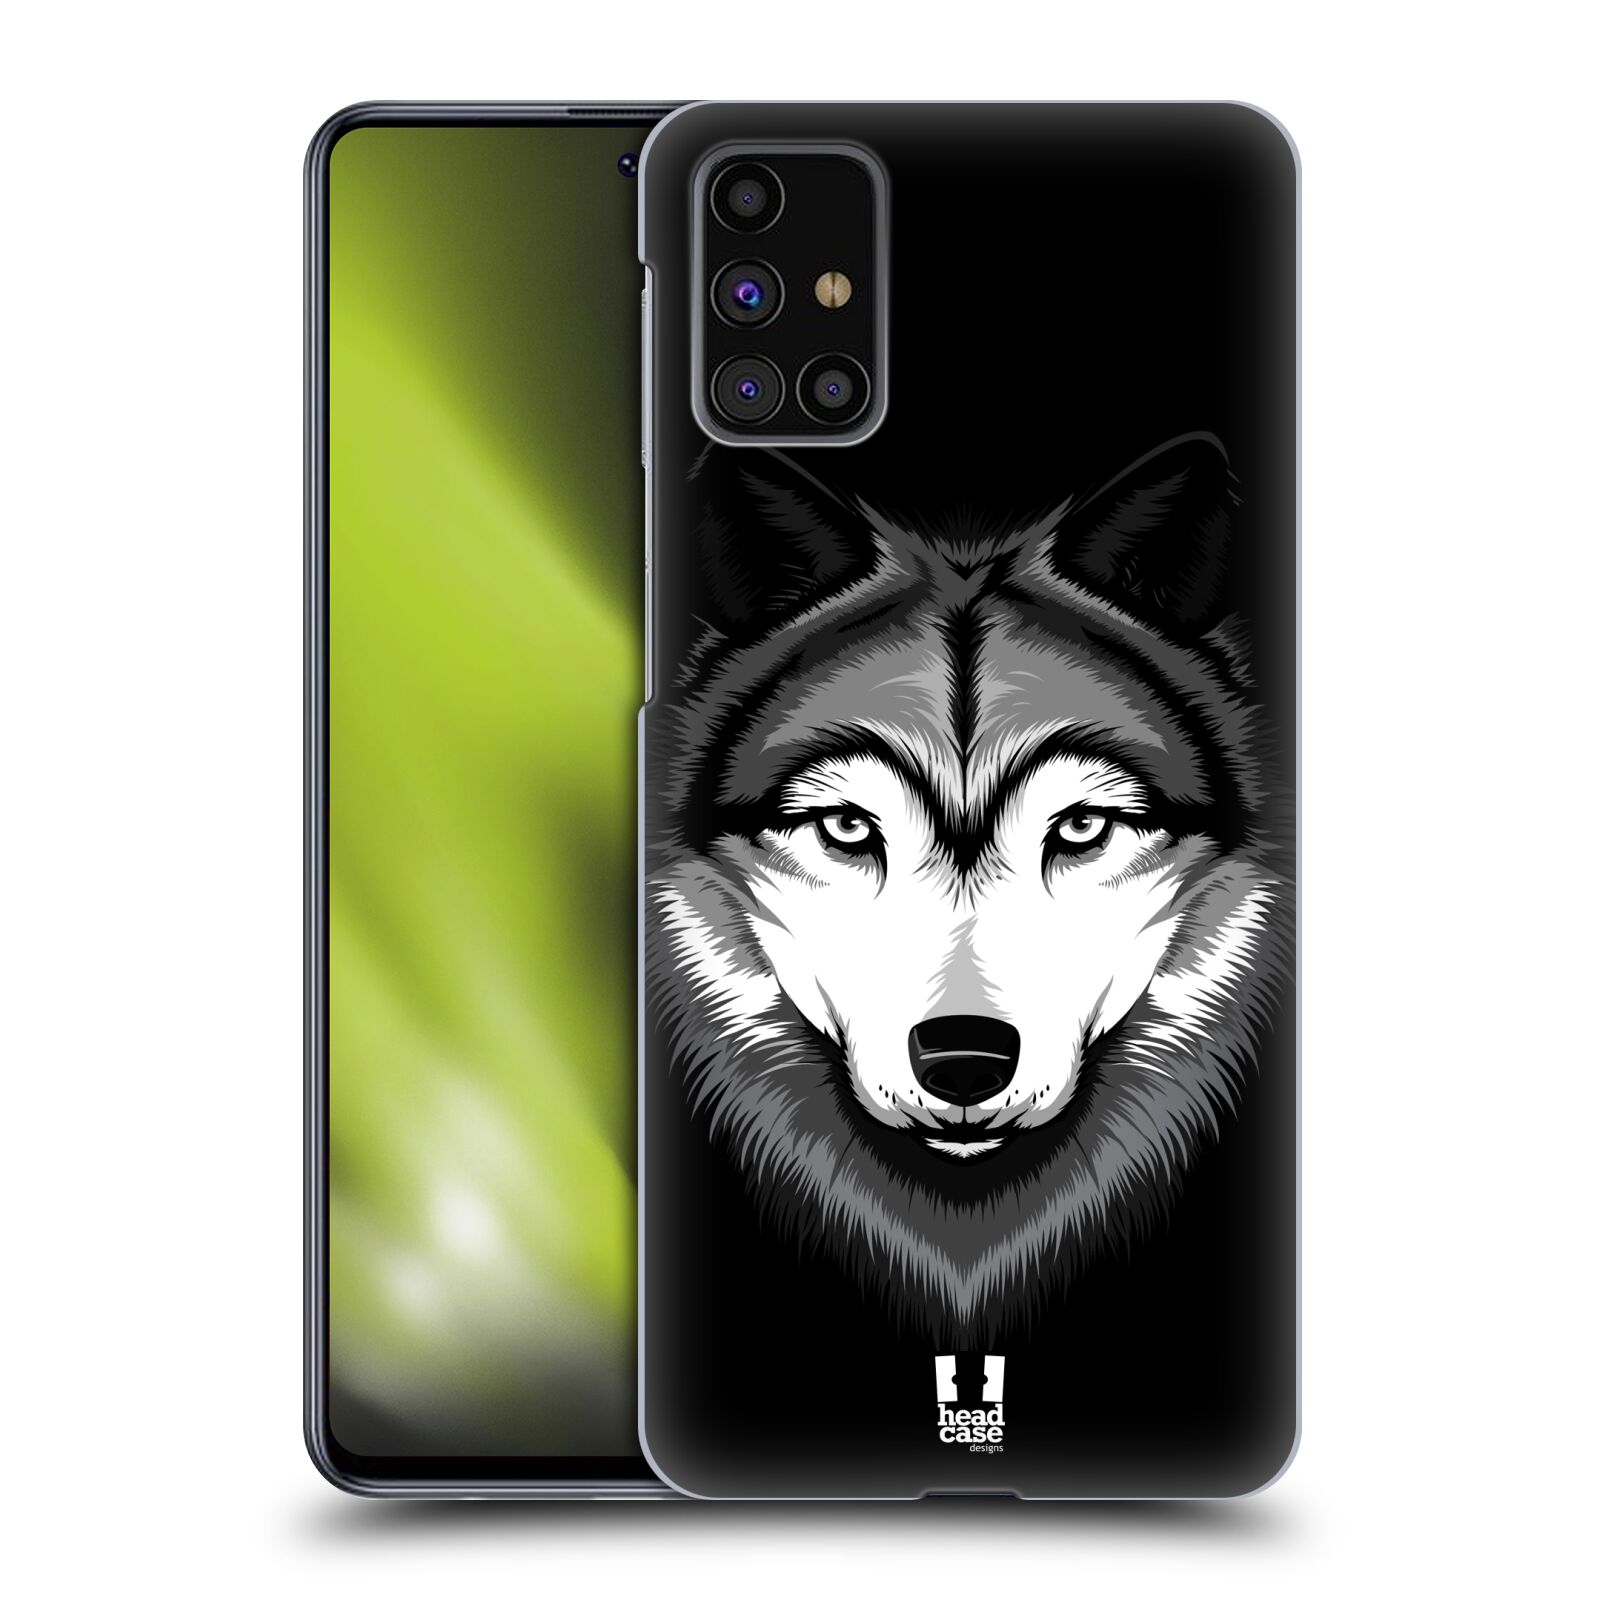 Plastový obal HEAD CASE na mobil Samsung Galaxy M31s vzor Zvíře kreslená tvář 2 vlk